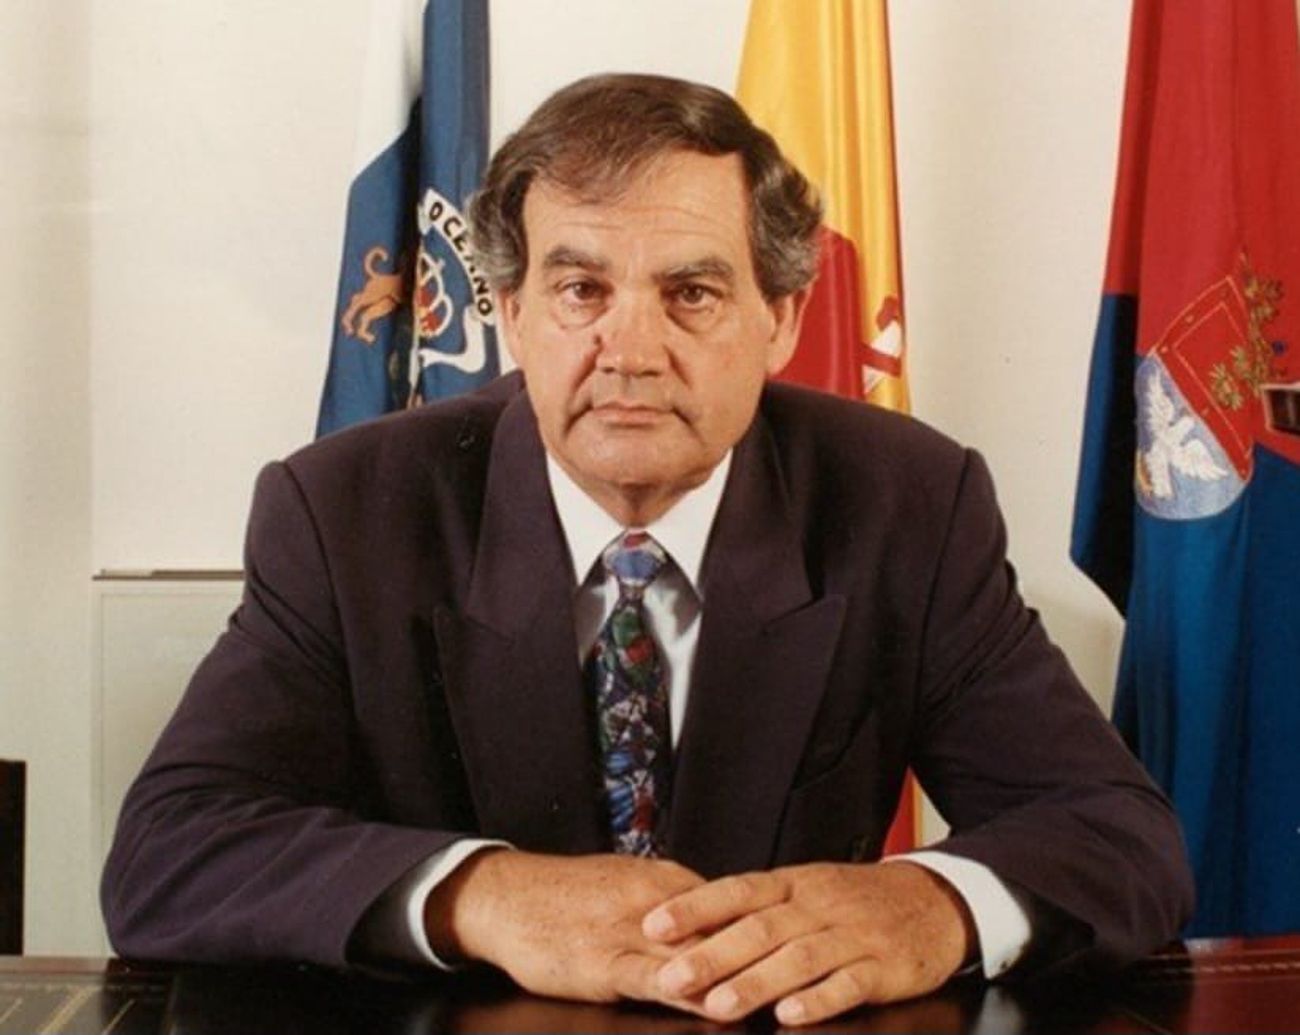 El exalcalde socialista José María Espino González